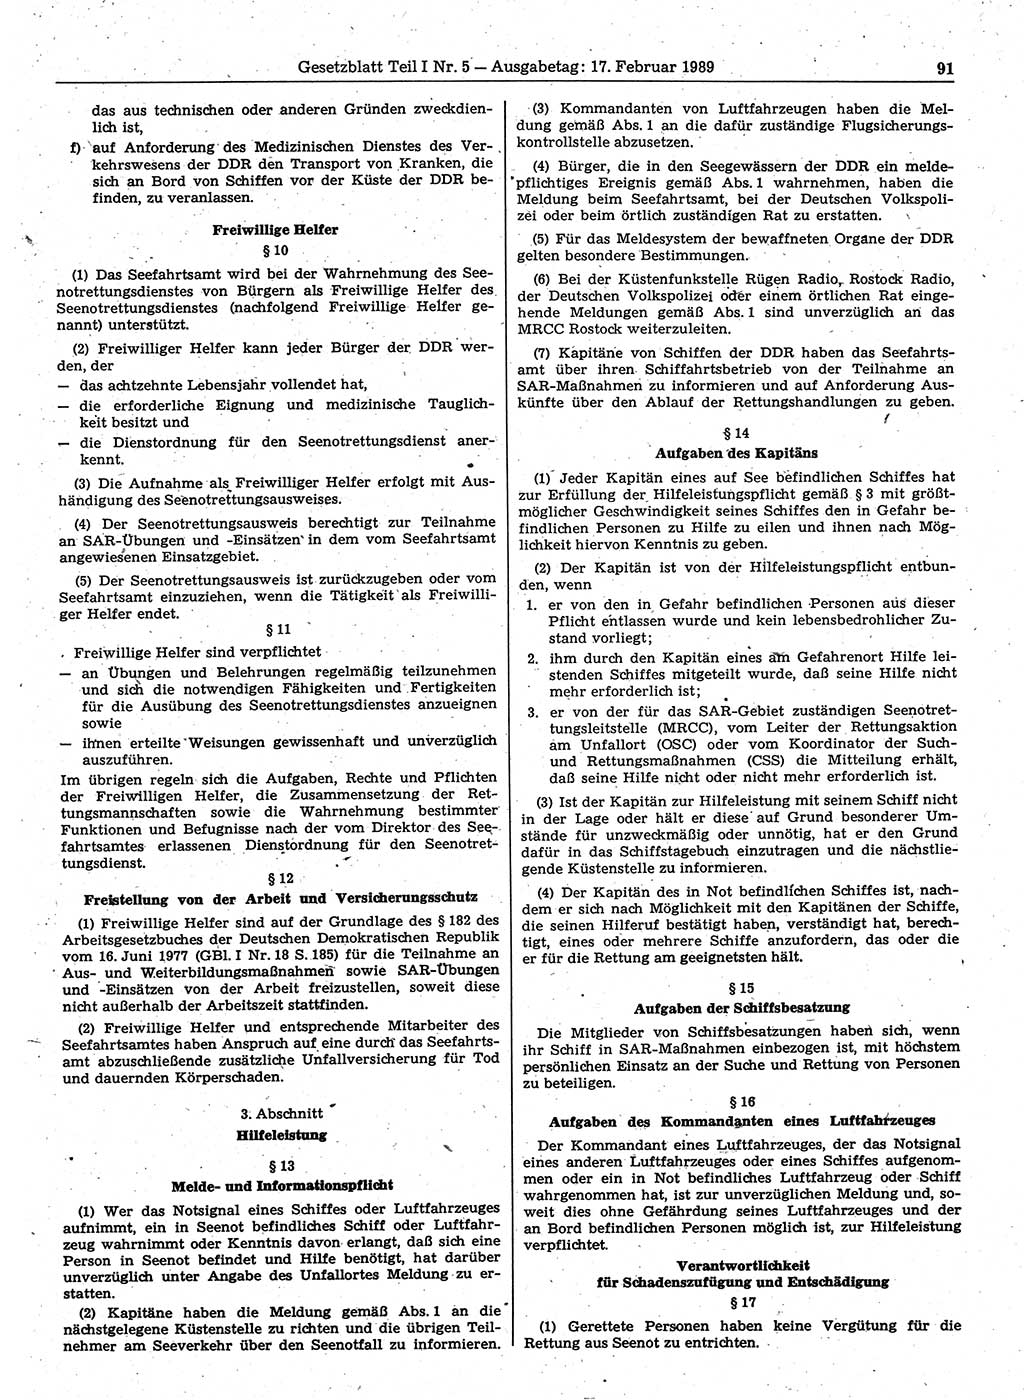 Gesetzblatt (GBl.) der Deutschen Demokratischen Republik (DDR) Teil Ⅰ 1989, Seite 91 (GBl. DDR Ⅰ 1989, S. 91)